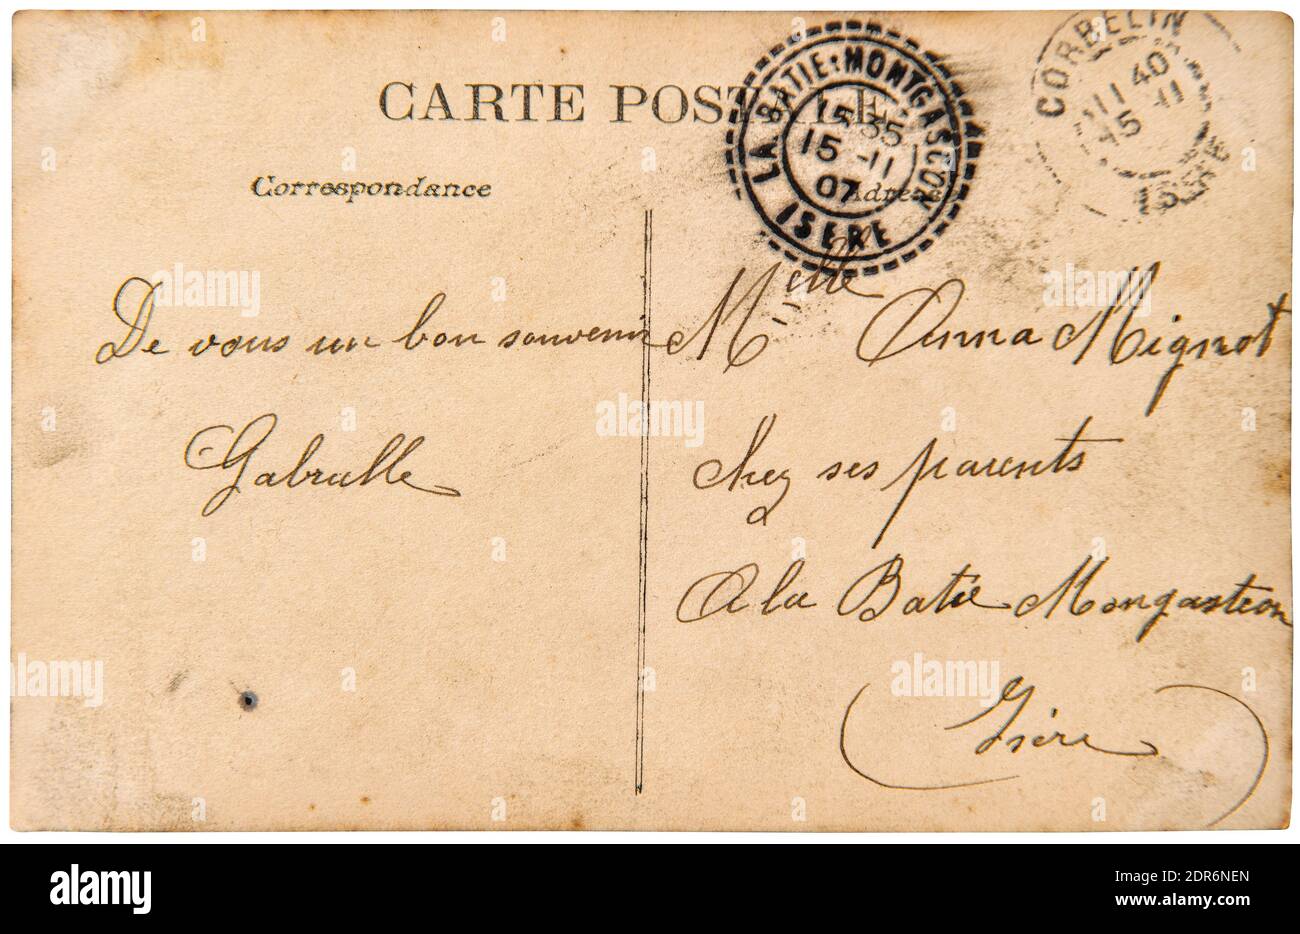 Correo postal antiguo con sello. Textura de papel usada. Diario de chatarra del libro de recuerdos Foto de stock